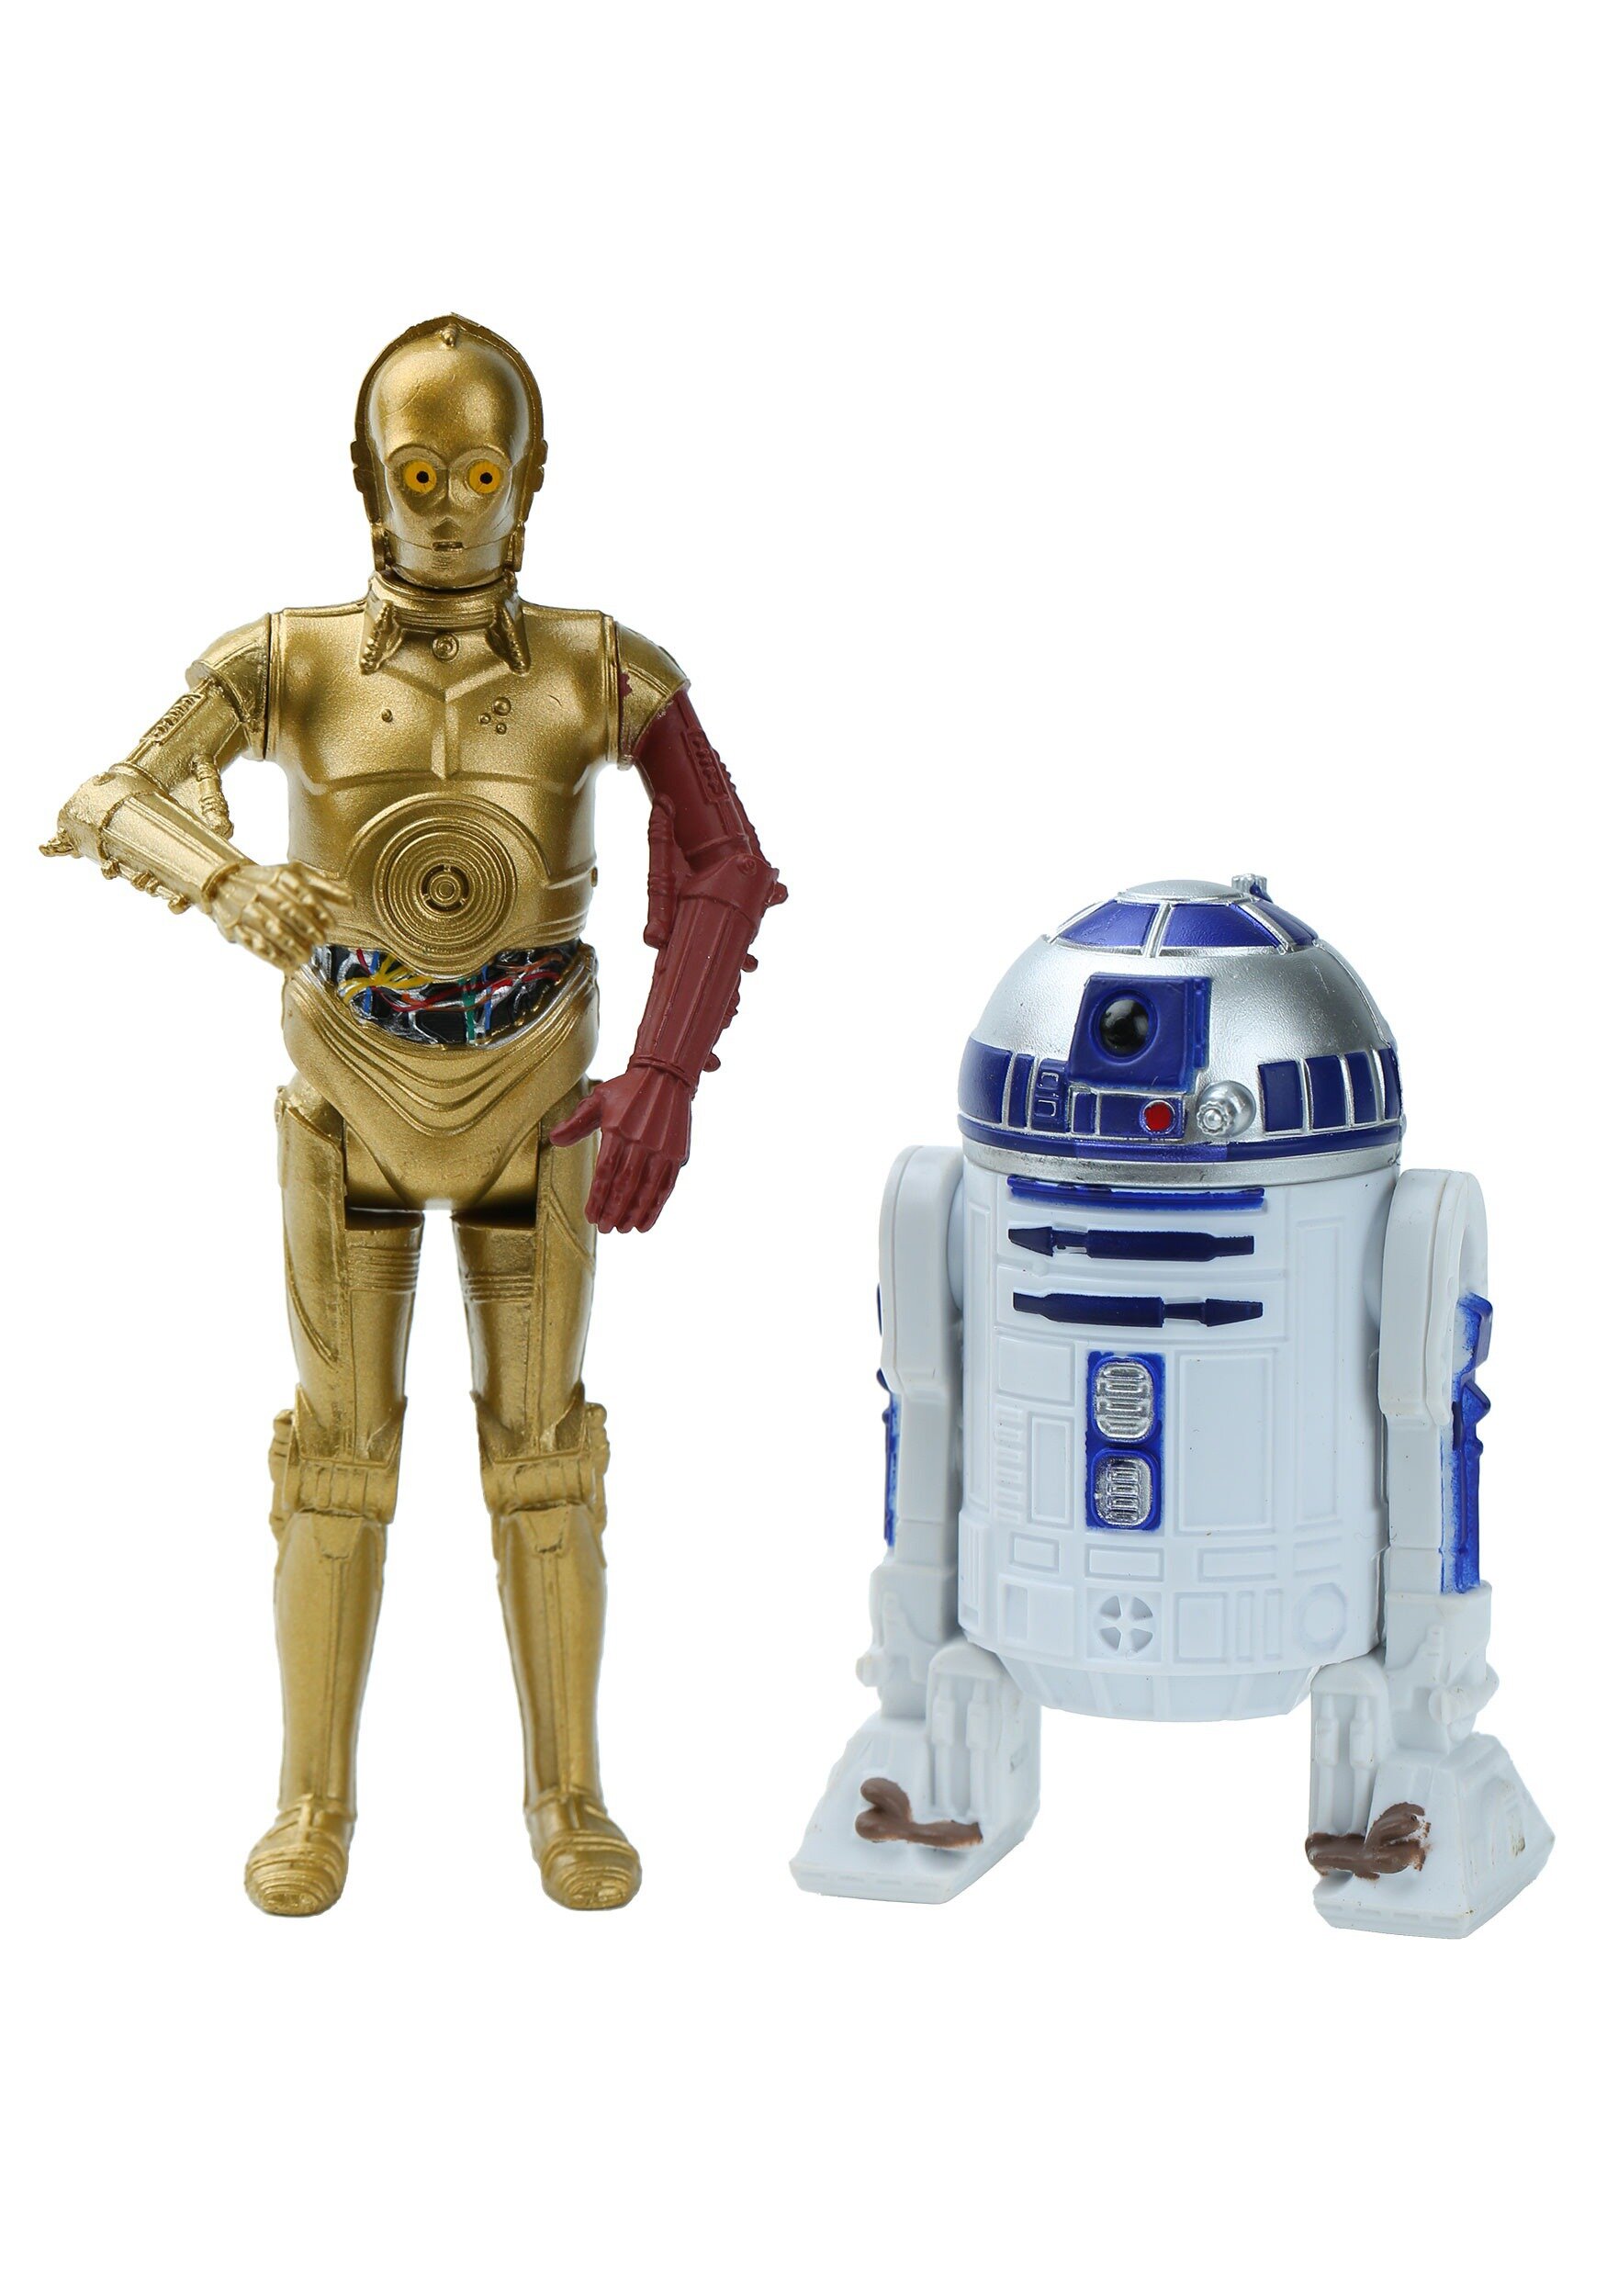 Imagen de los dos robots de Star Wars